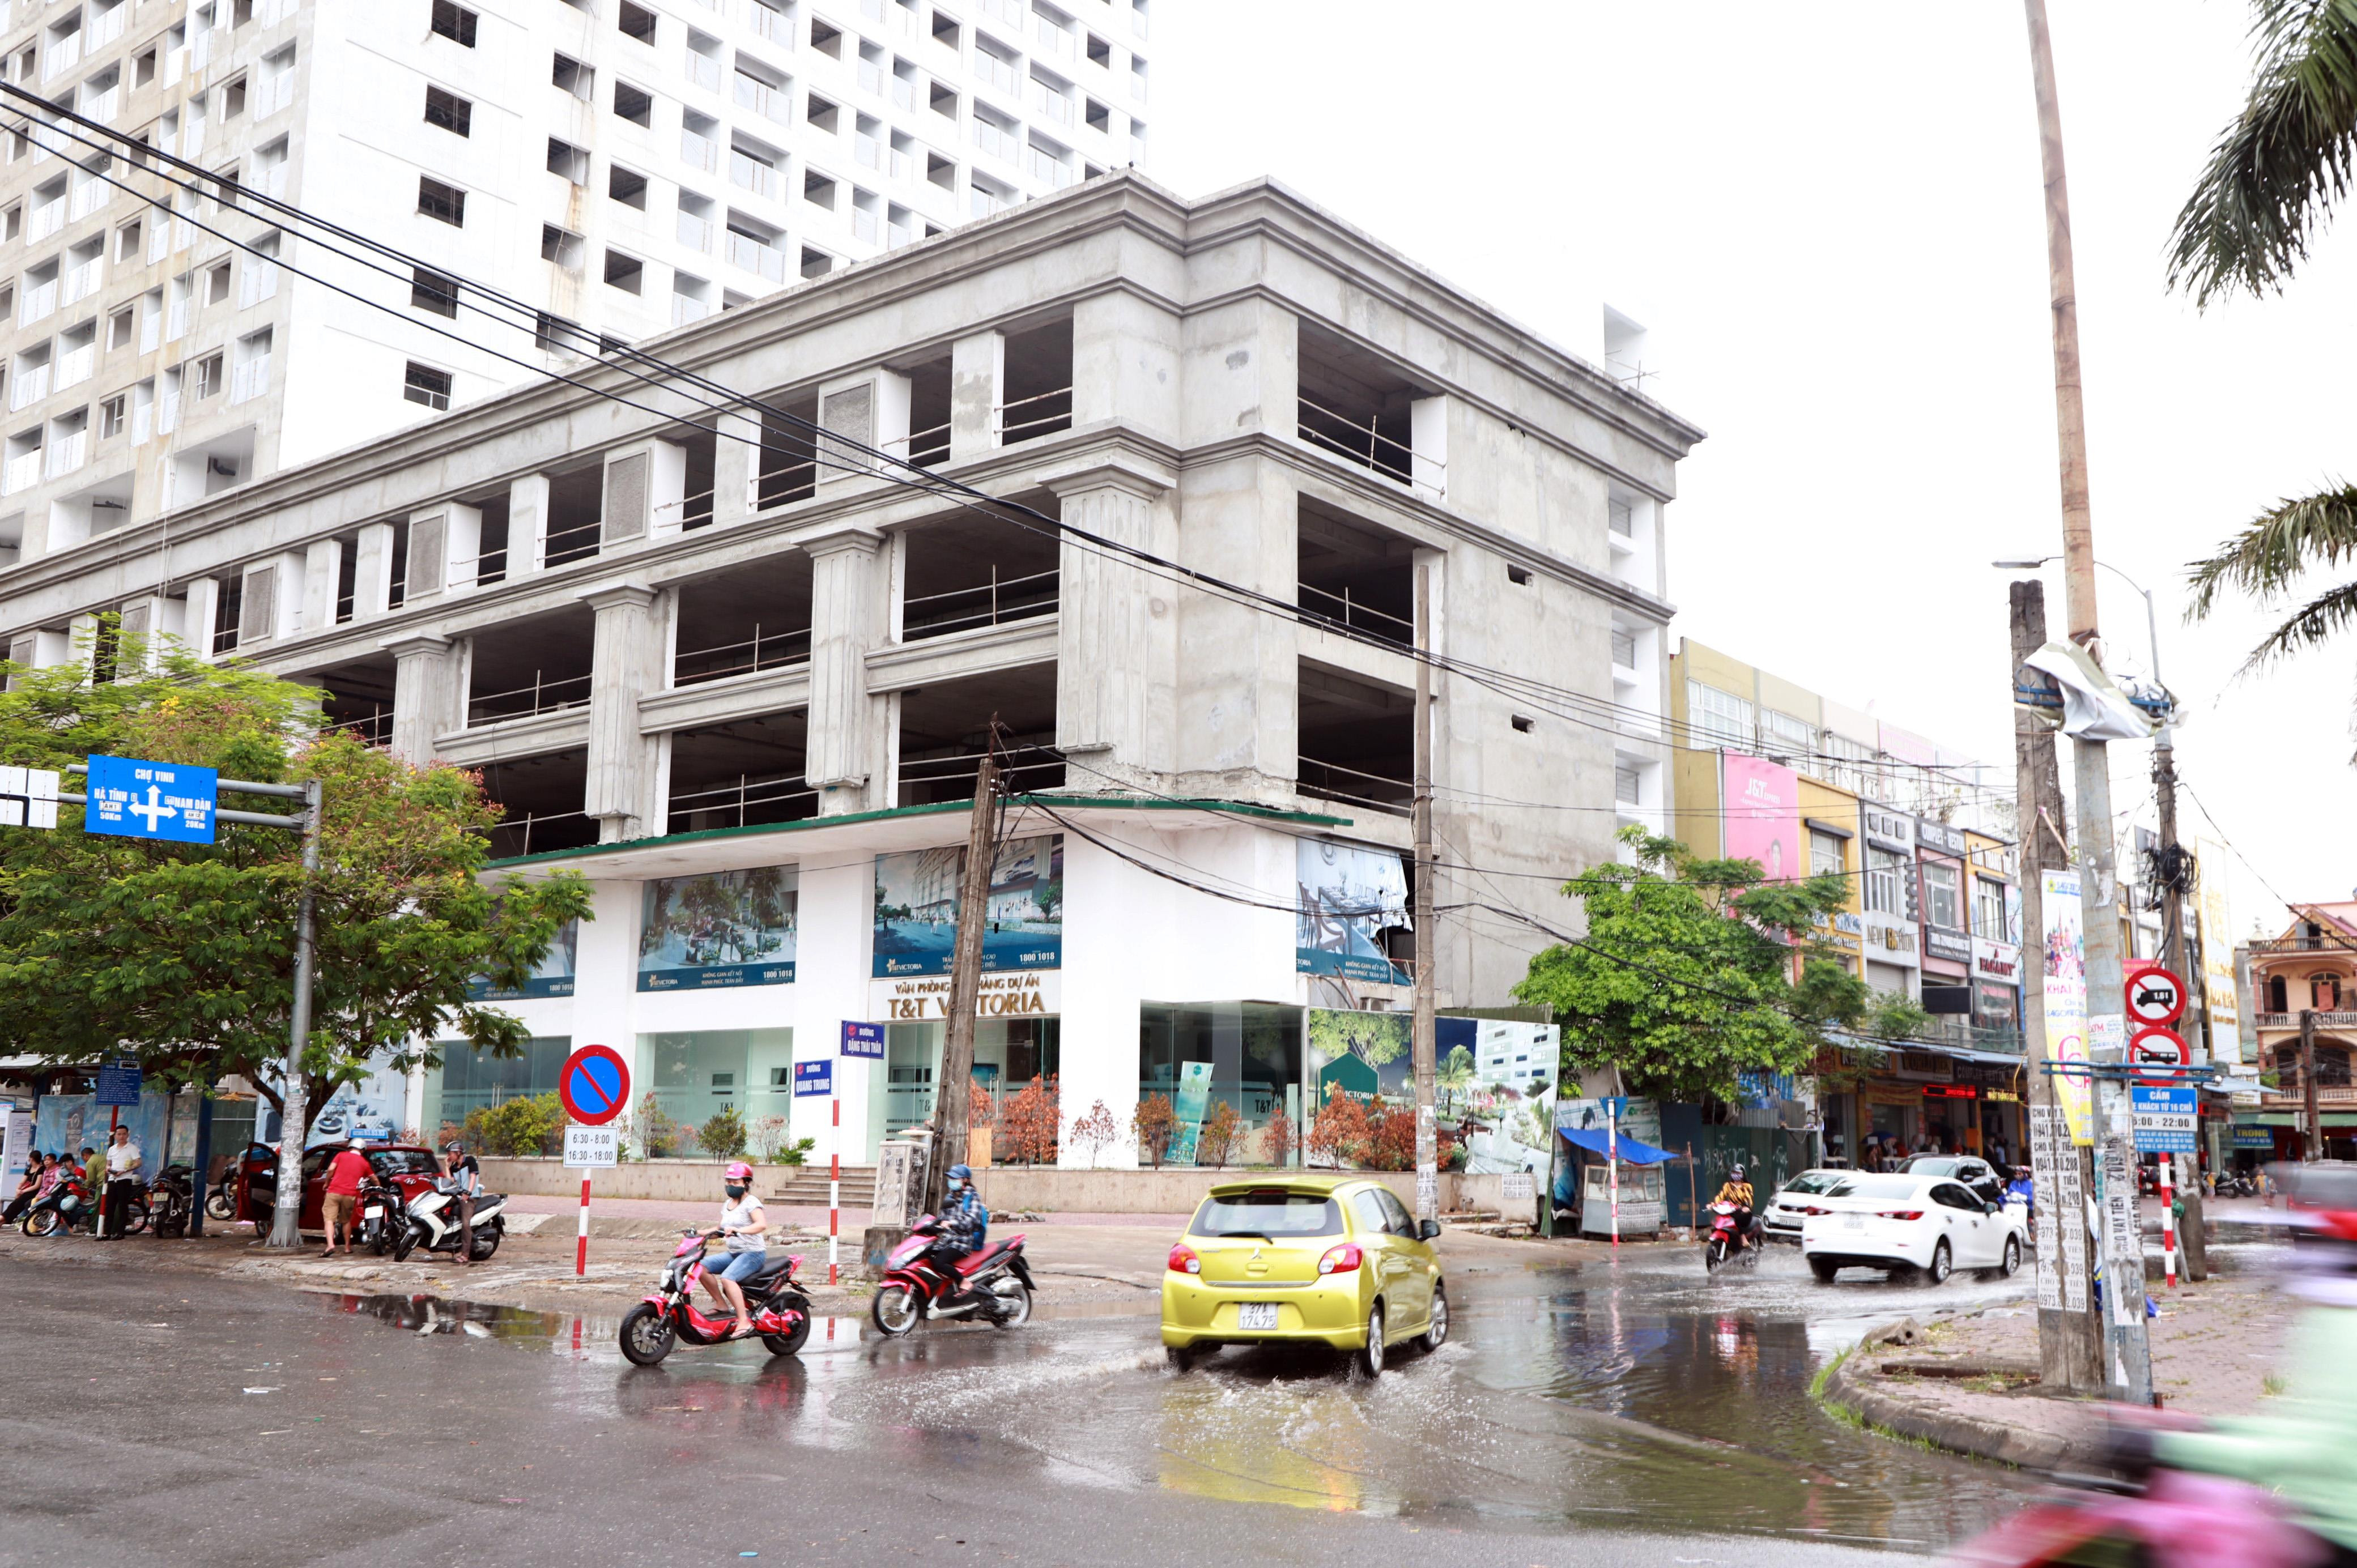 bna_Chỉ cần một cơ mưa nhỏ đường Đặng Thái Thân tại phường Quang Trung đã bị ngập